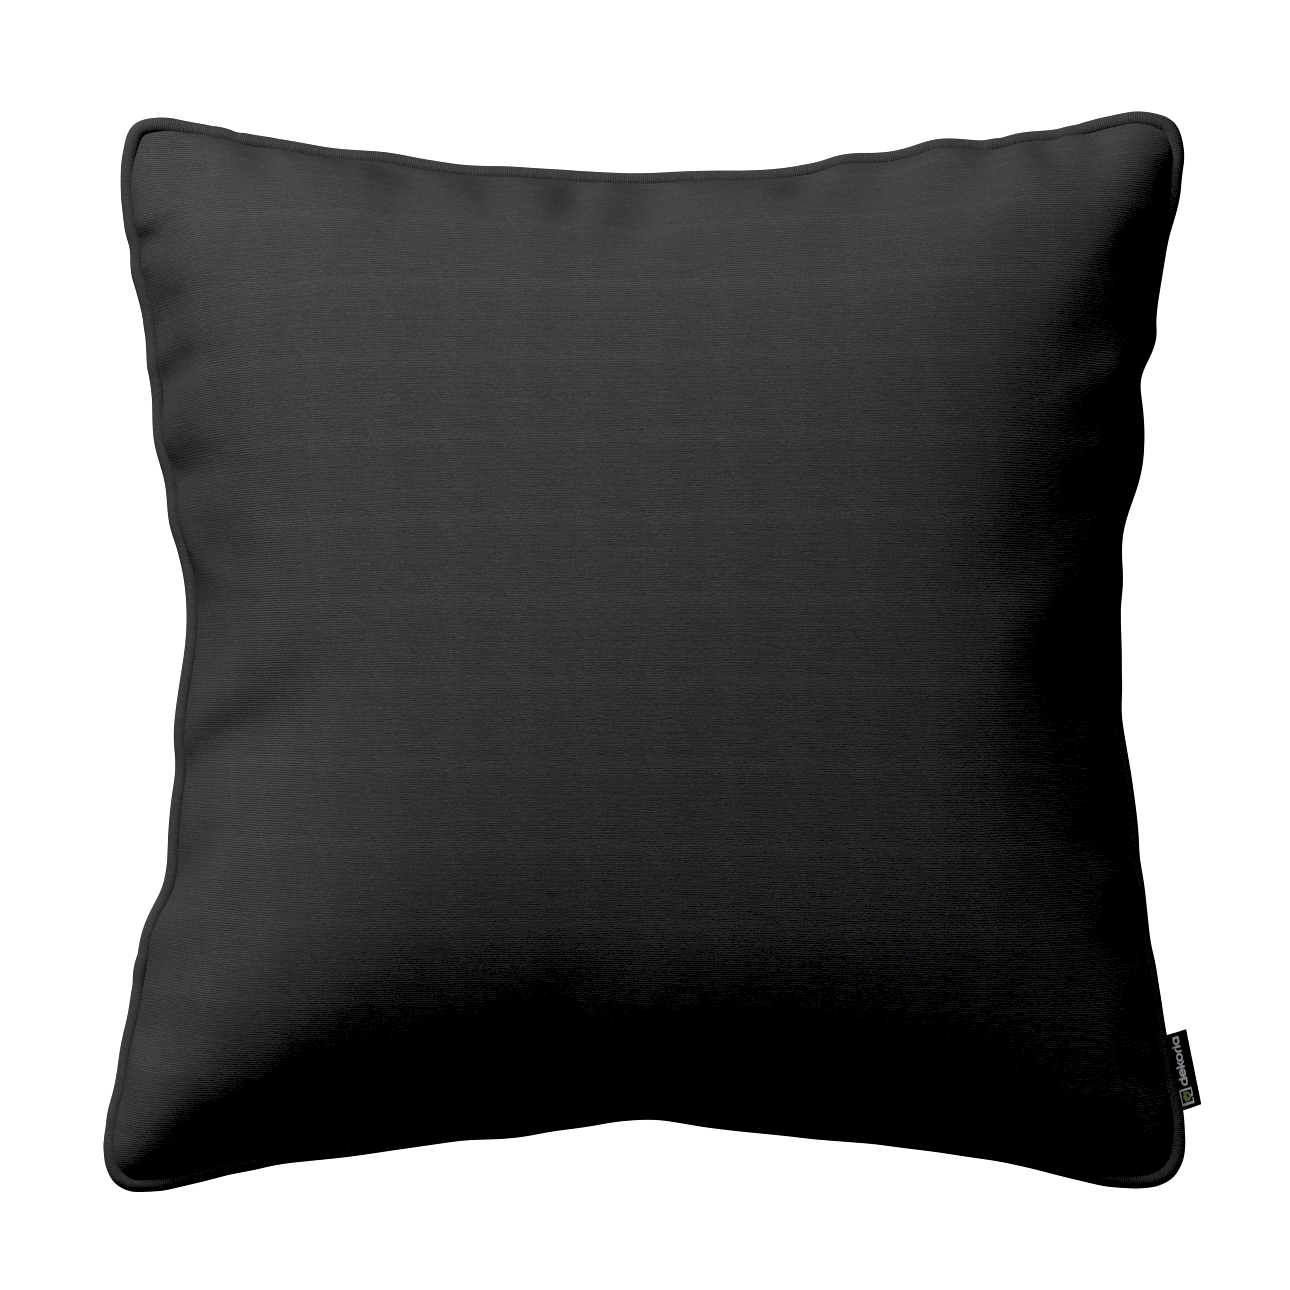 Kissenhülle Gabi mit Paspel, schwarz, 45 x 45 cm, Loneta (133-06) günstig online kaufen